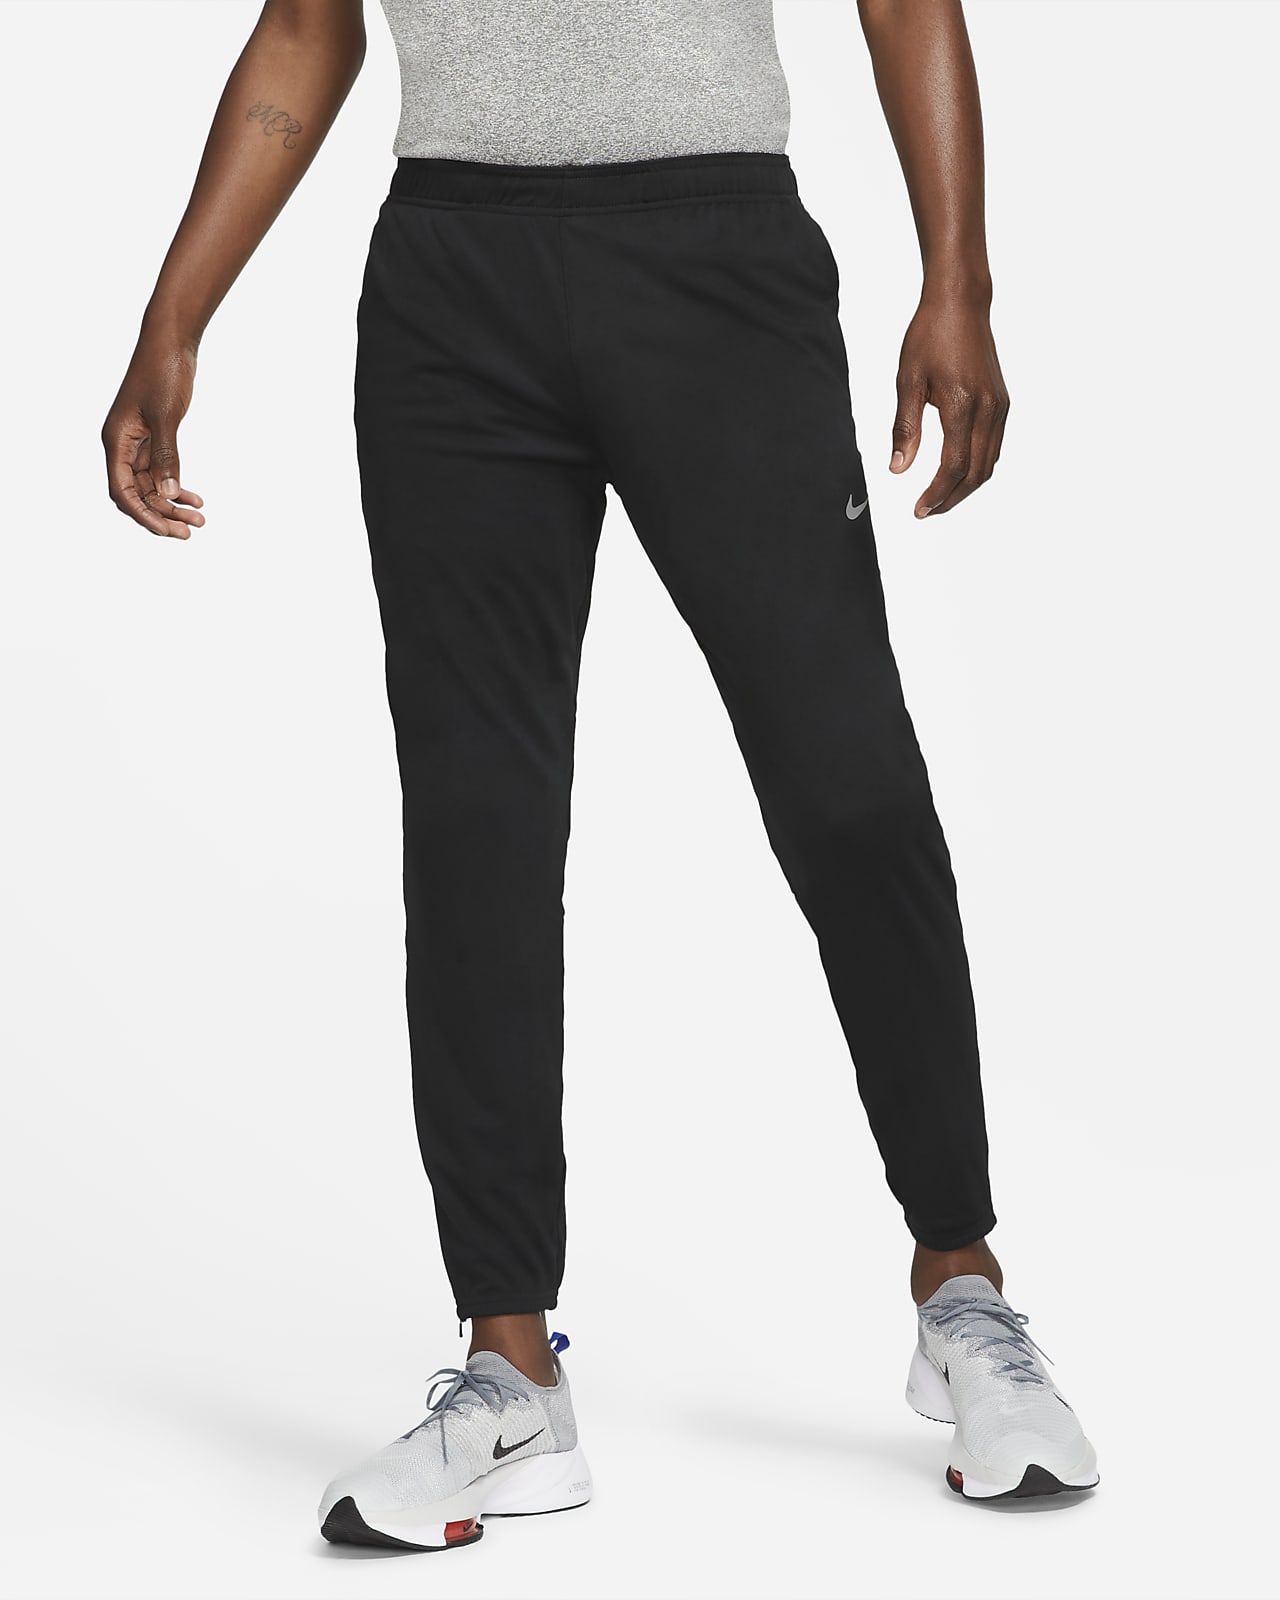 Pantaloni da running in maglia Nike Dri-FIT Challenger - Uomo